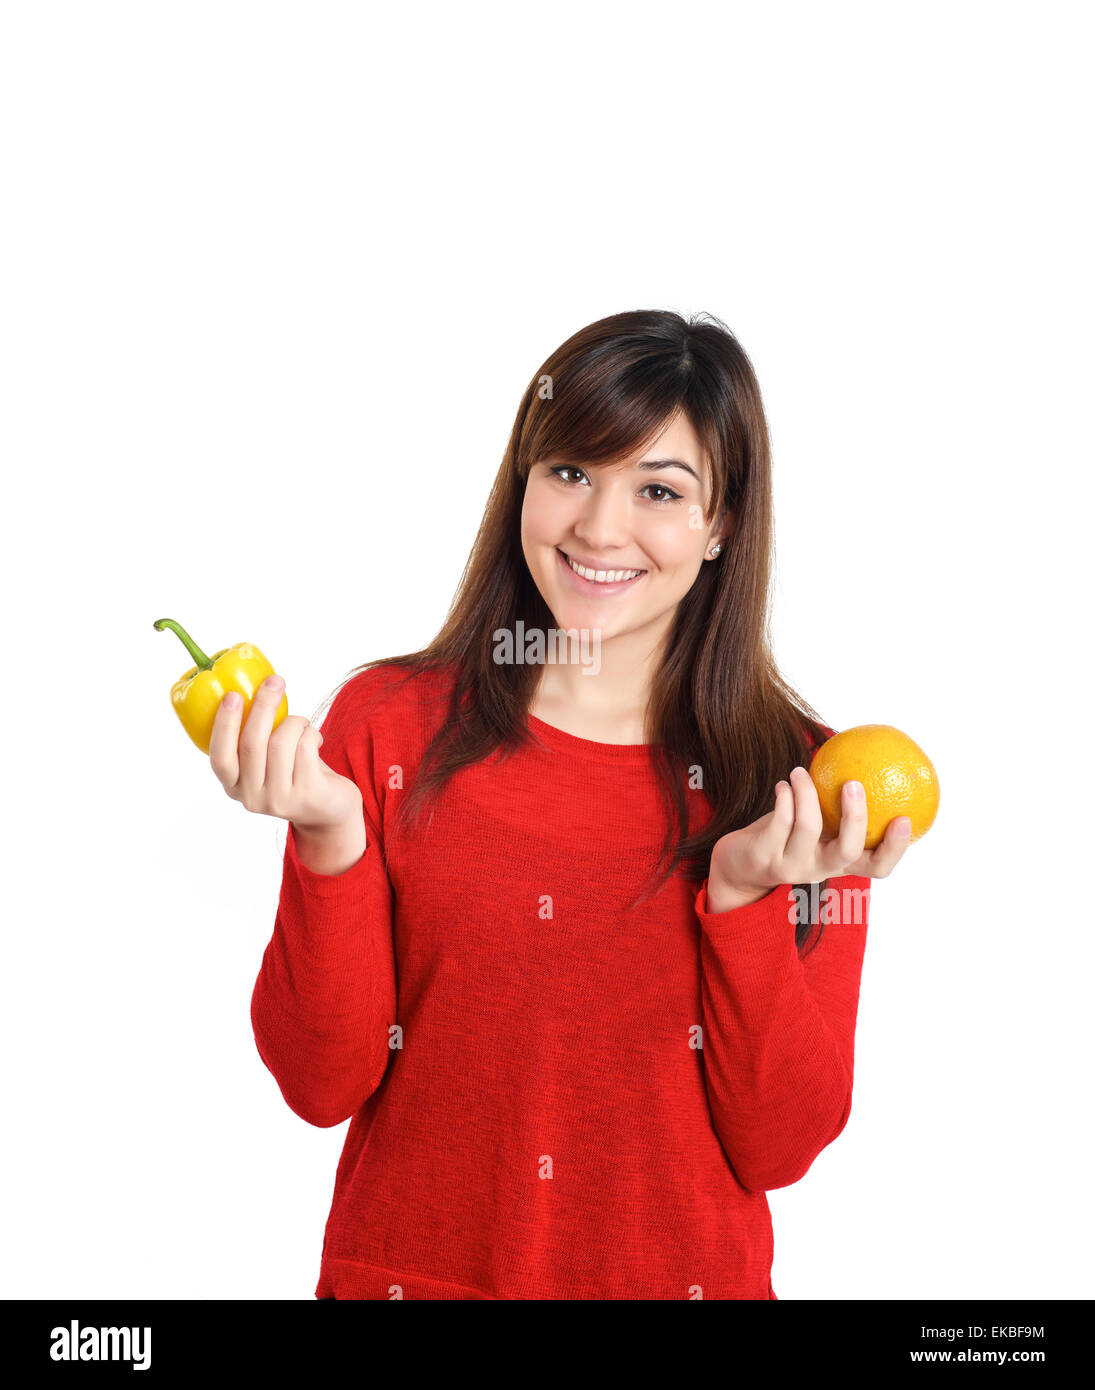 Magnifique Asian girl holding fruits et légumes Banque D'Images